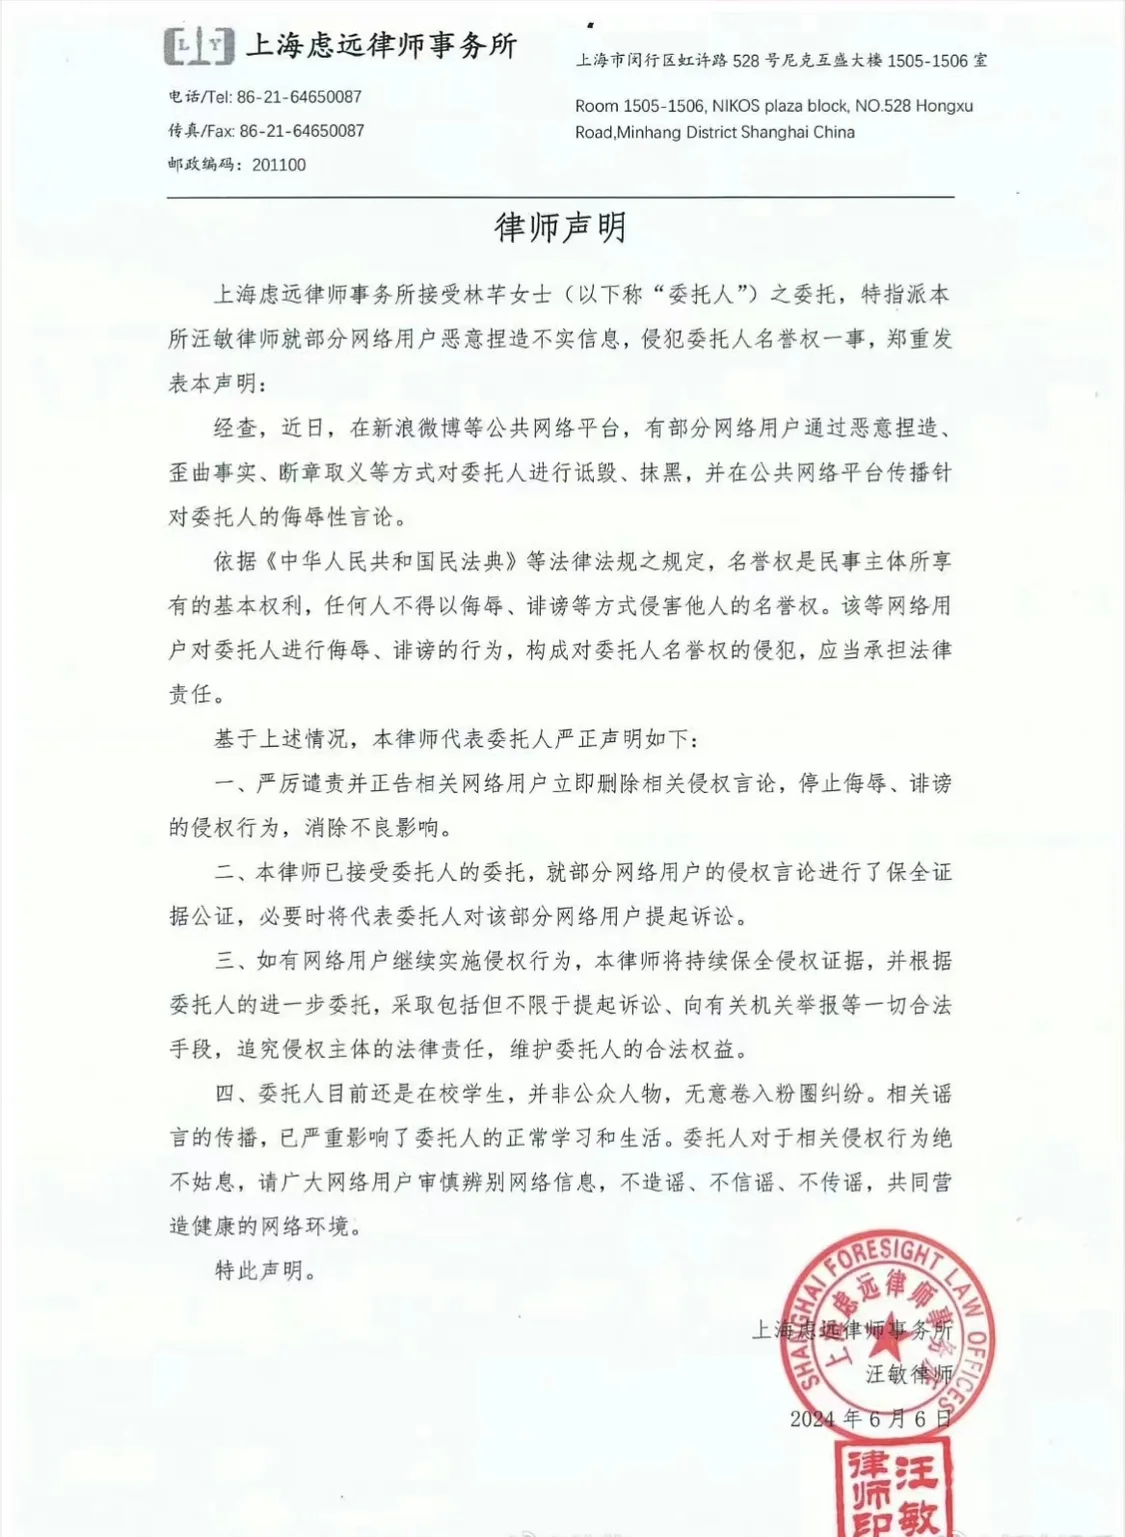 林芊否认与丁程鑫恋情 称将对侵权行为使用法律手段